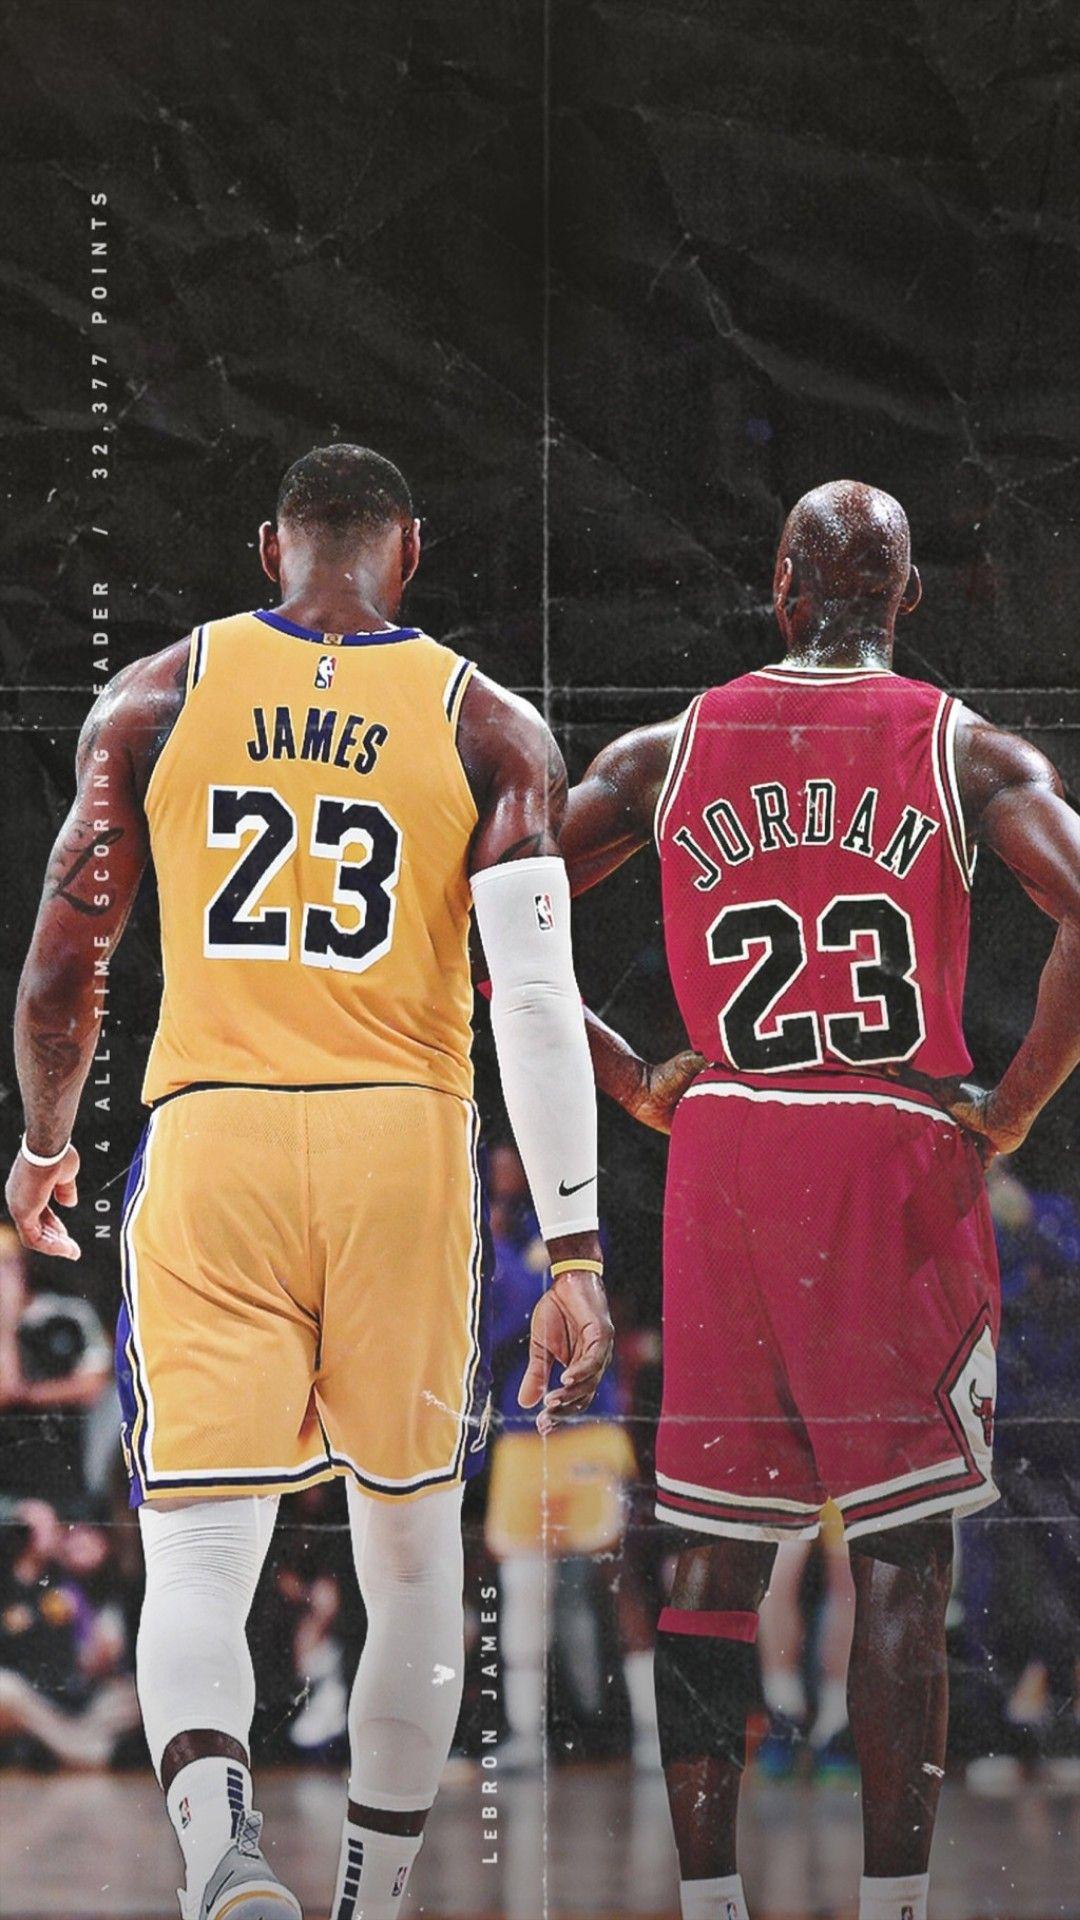 LeBron James and Michael Jordan wallpaper. Nba